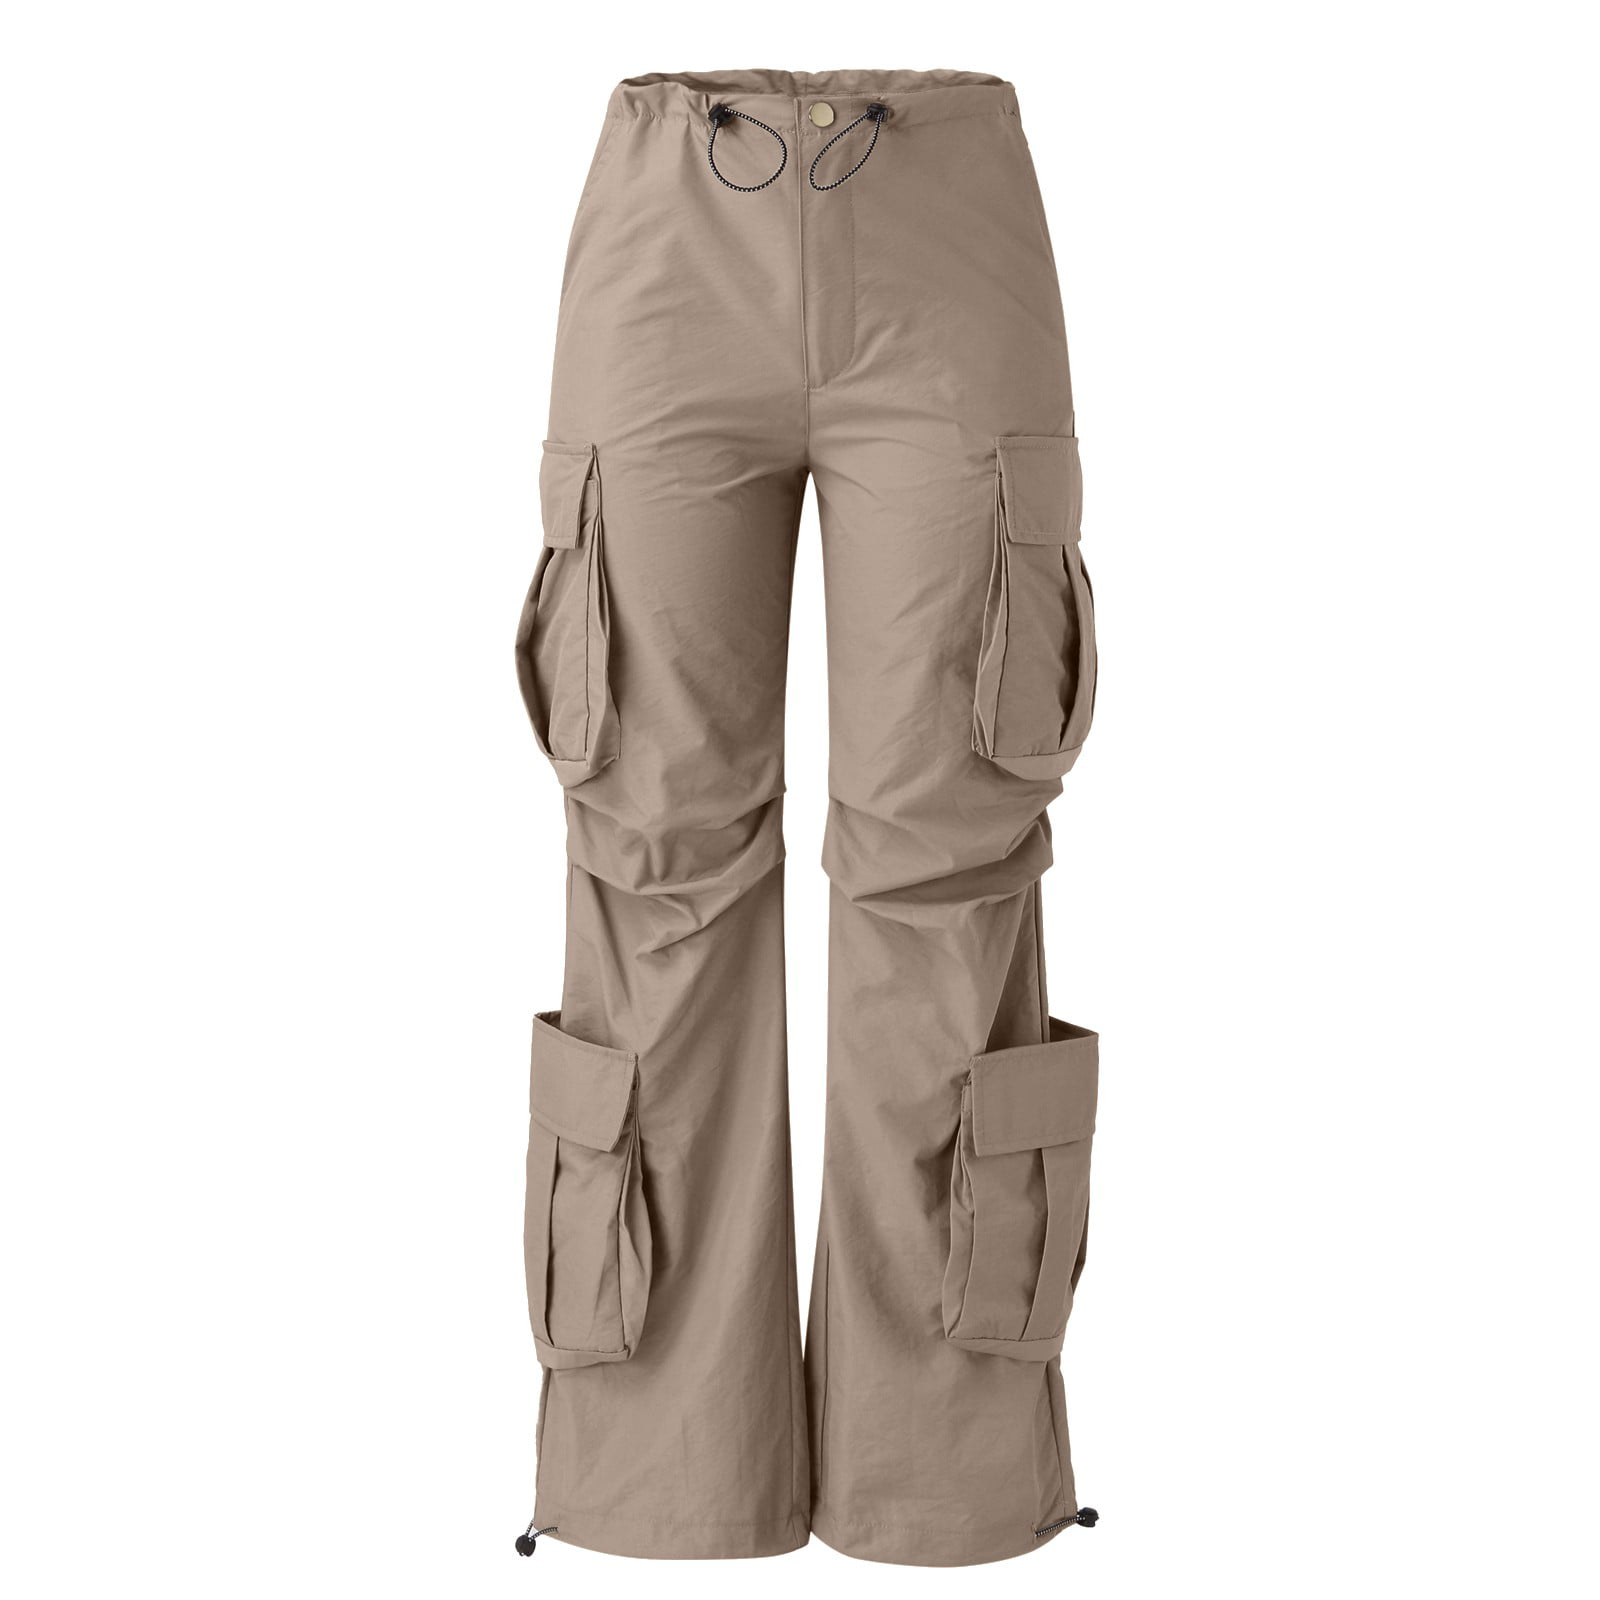 ZHIZAIHU Women Solid Color Pants Summer Long Cargo Trousers Baggy